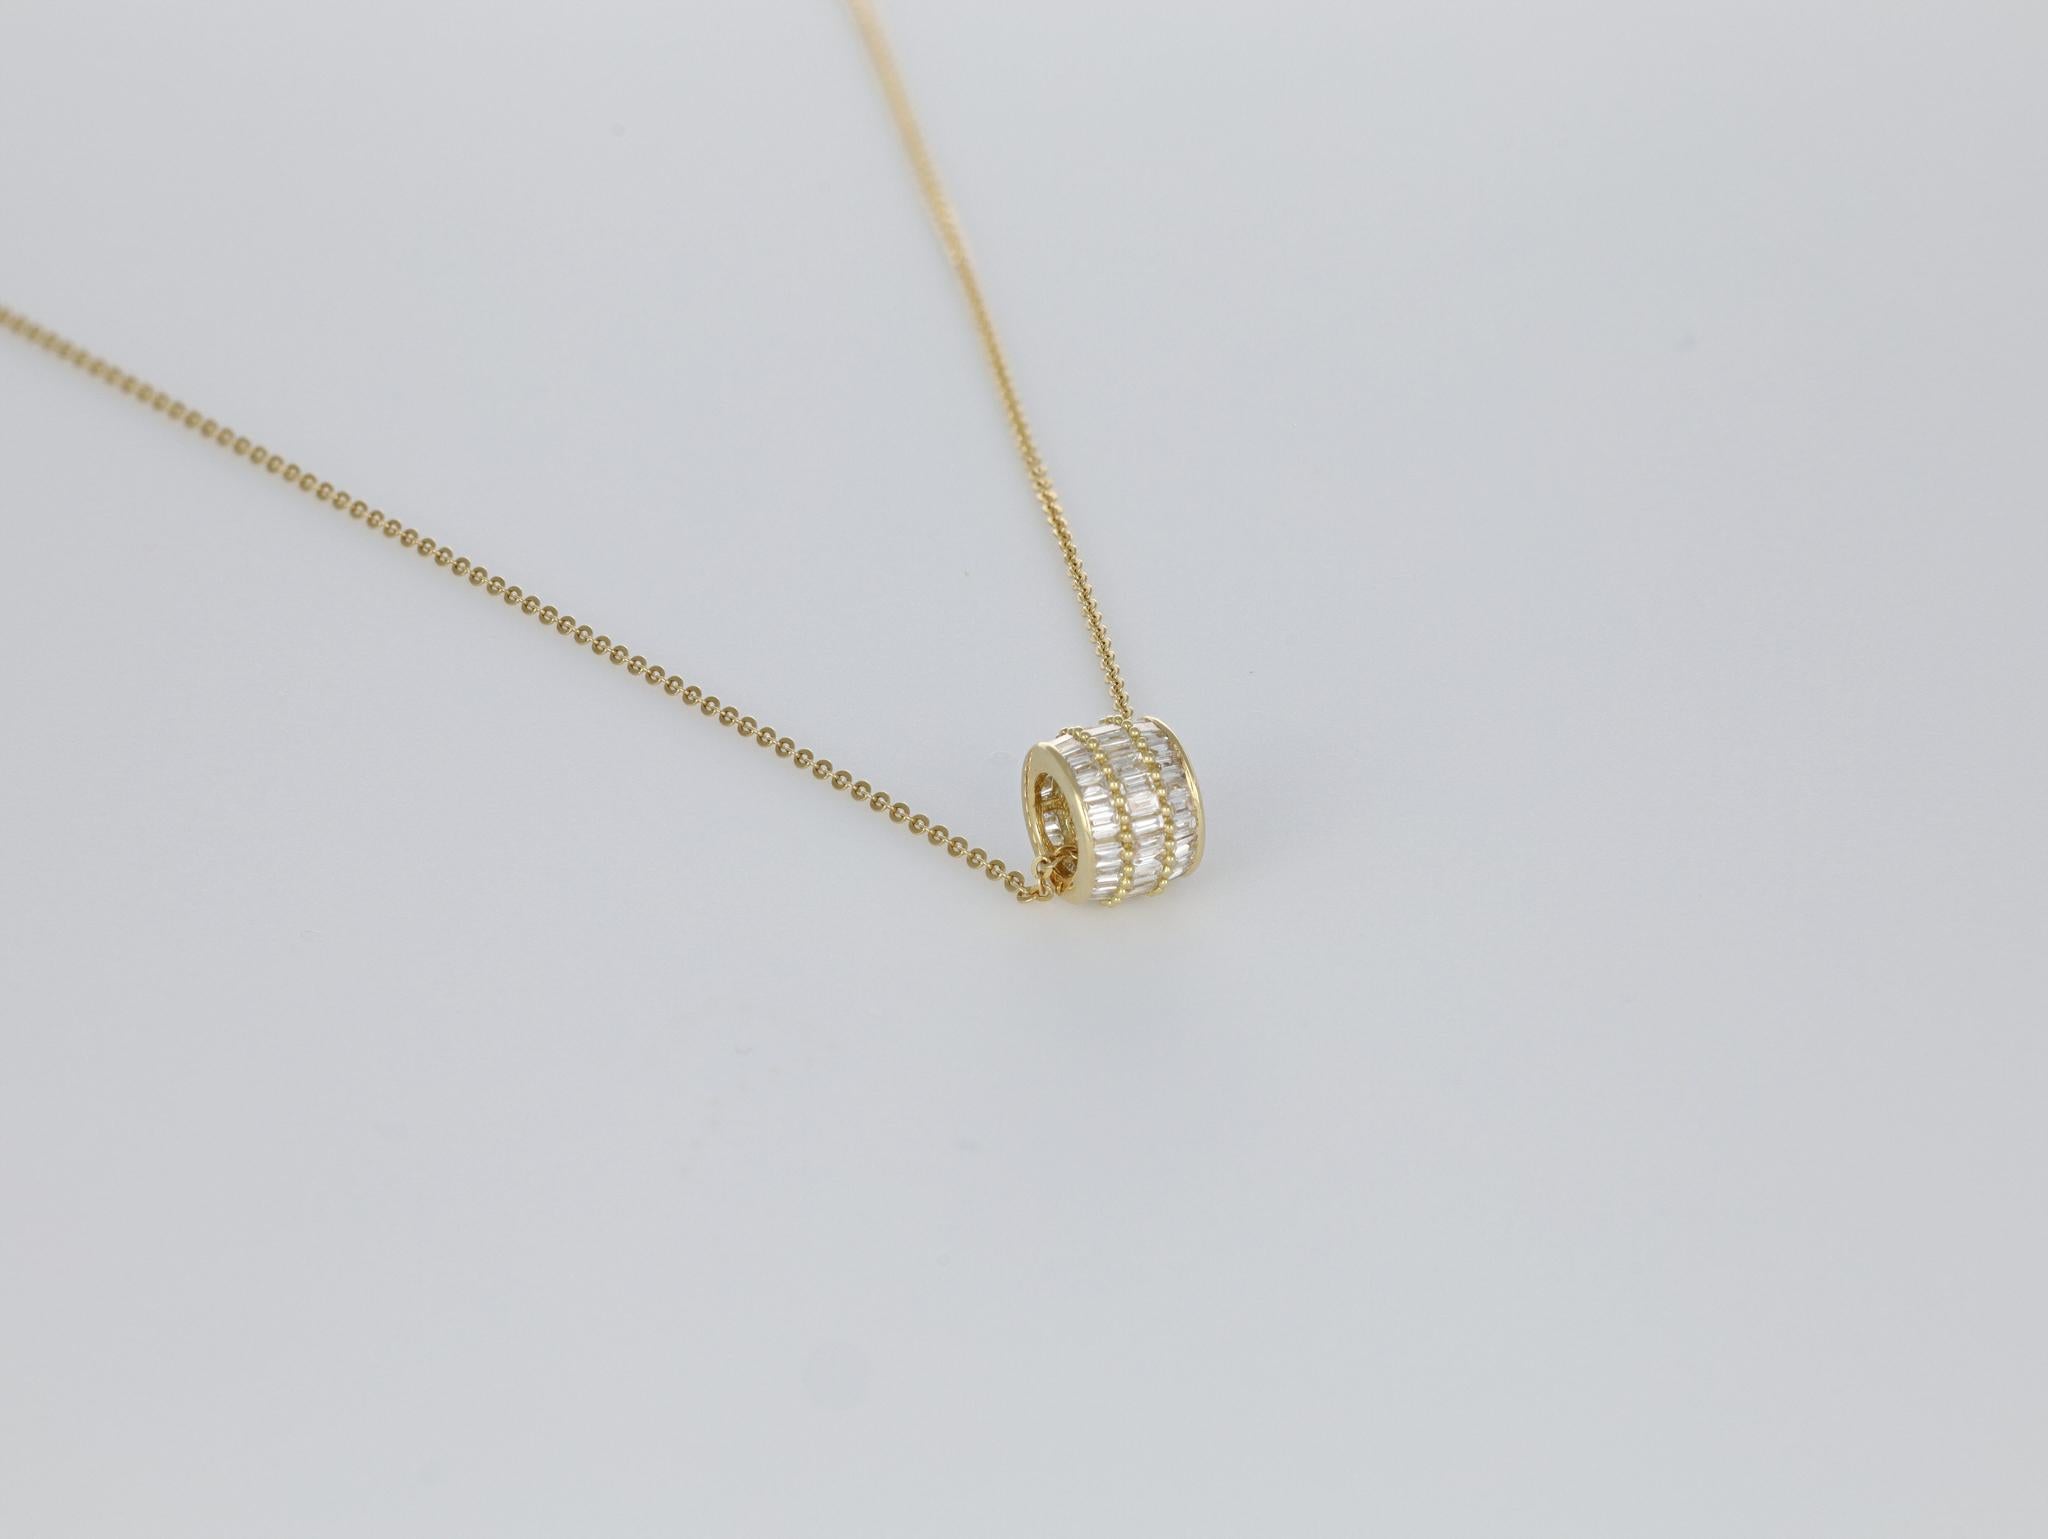 Baguette Cut Natural Diamond 0.51 carats 18 Karat Yellow Gold Chain Pendant Necklace For Sale